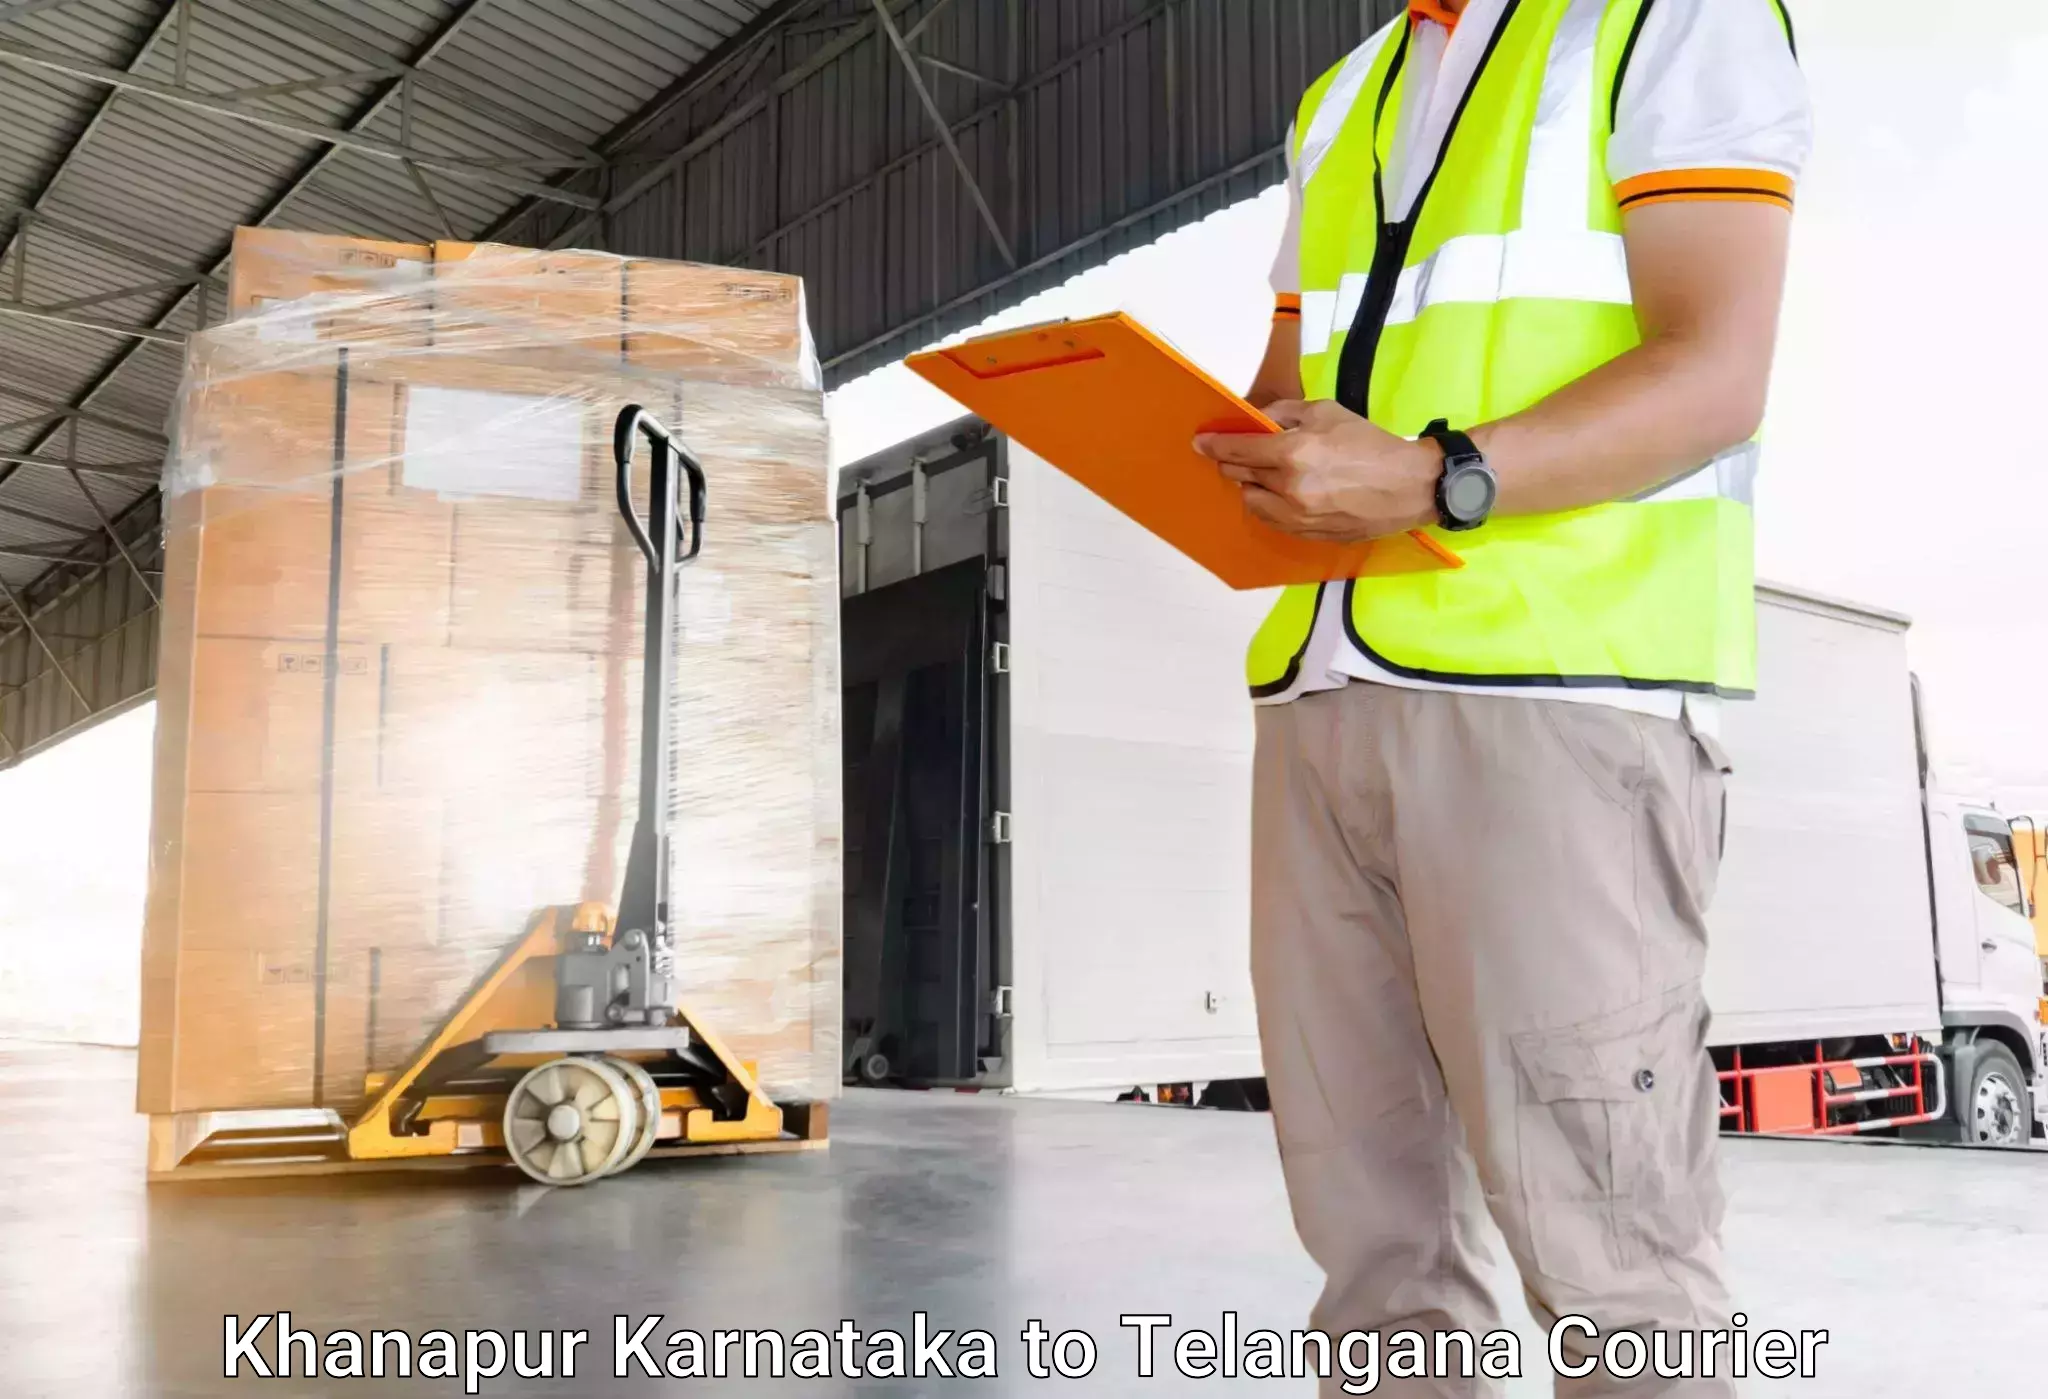 Luggage forwarding service Khanapur Karnataka to Haliya